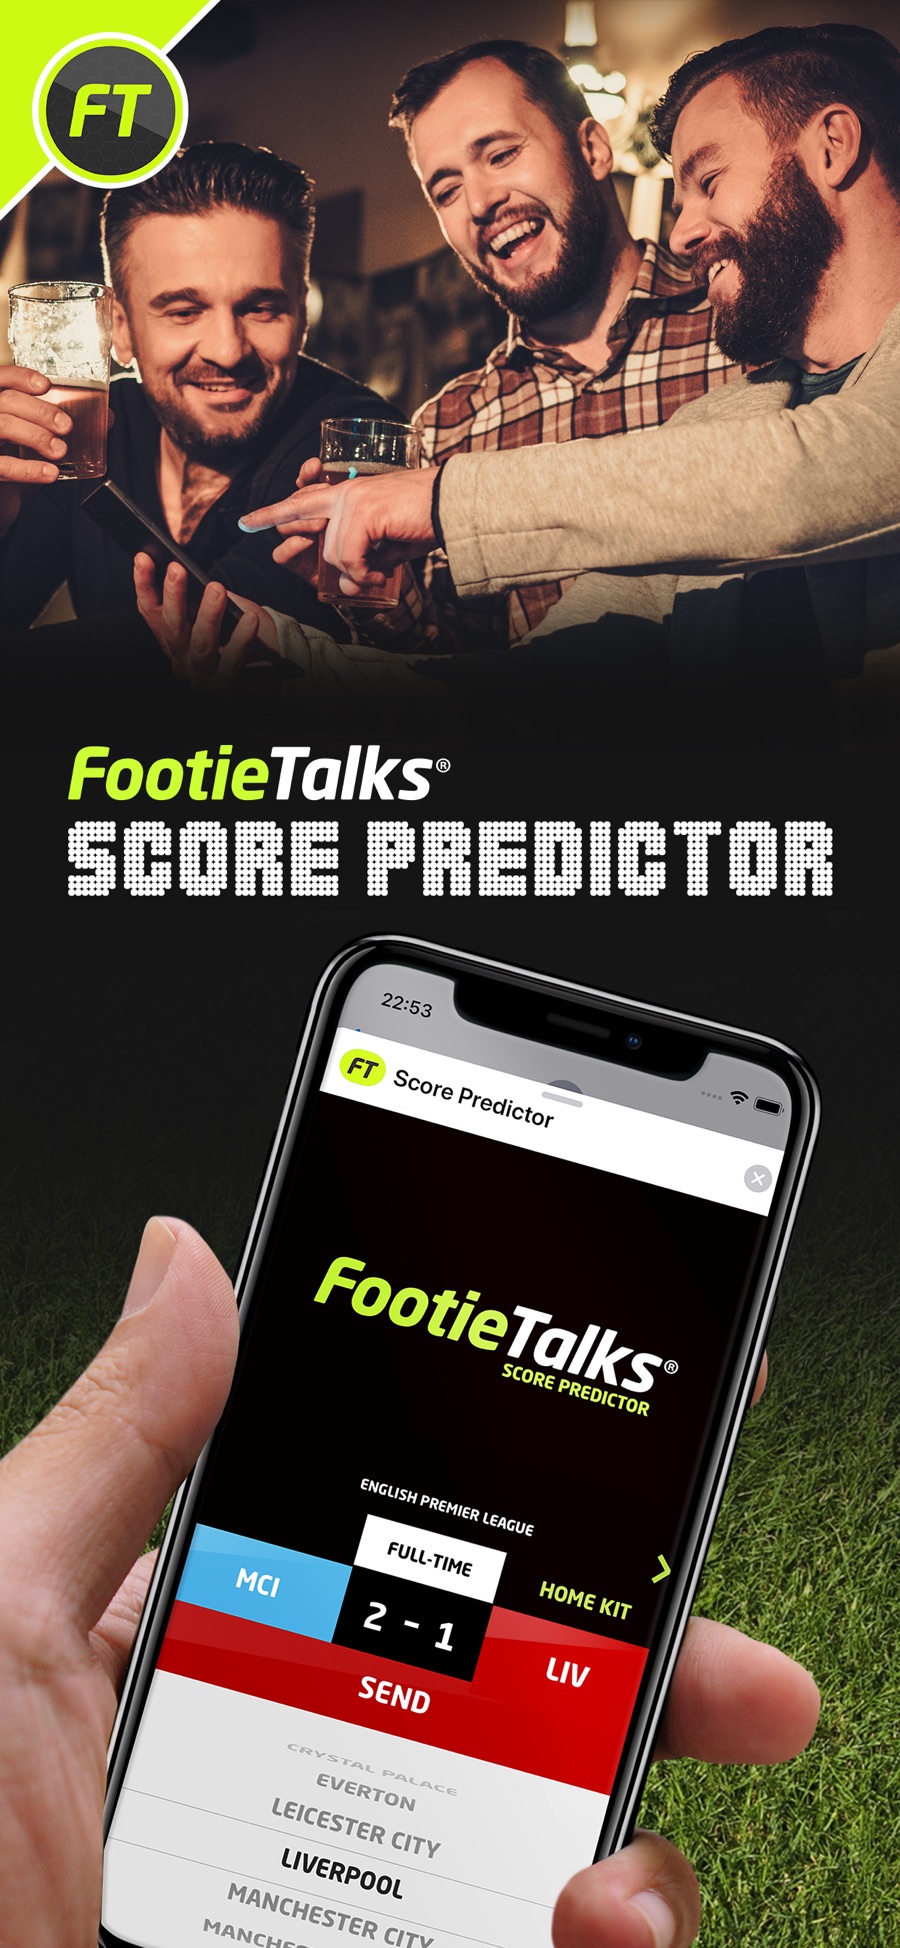 FootieTalks® Score Predictor